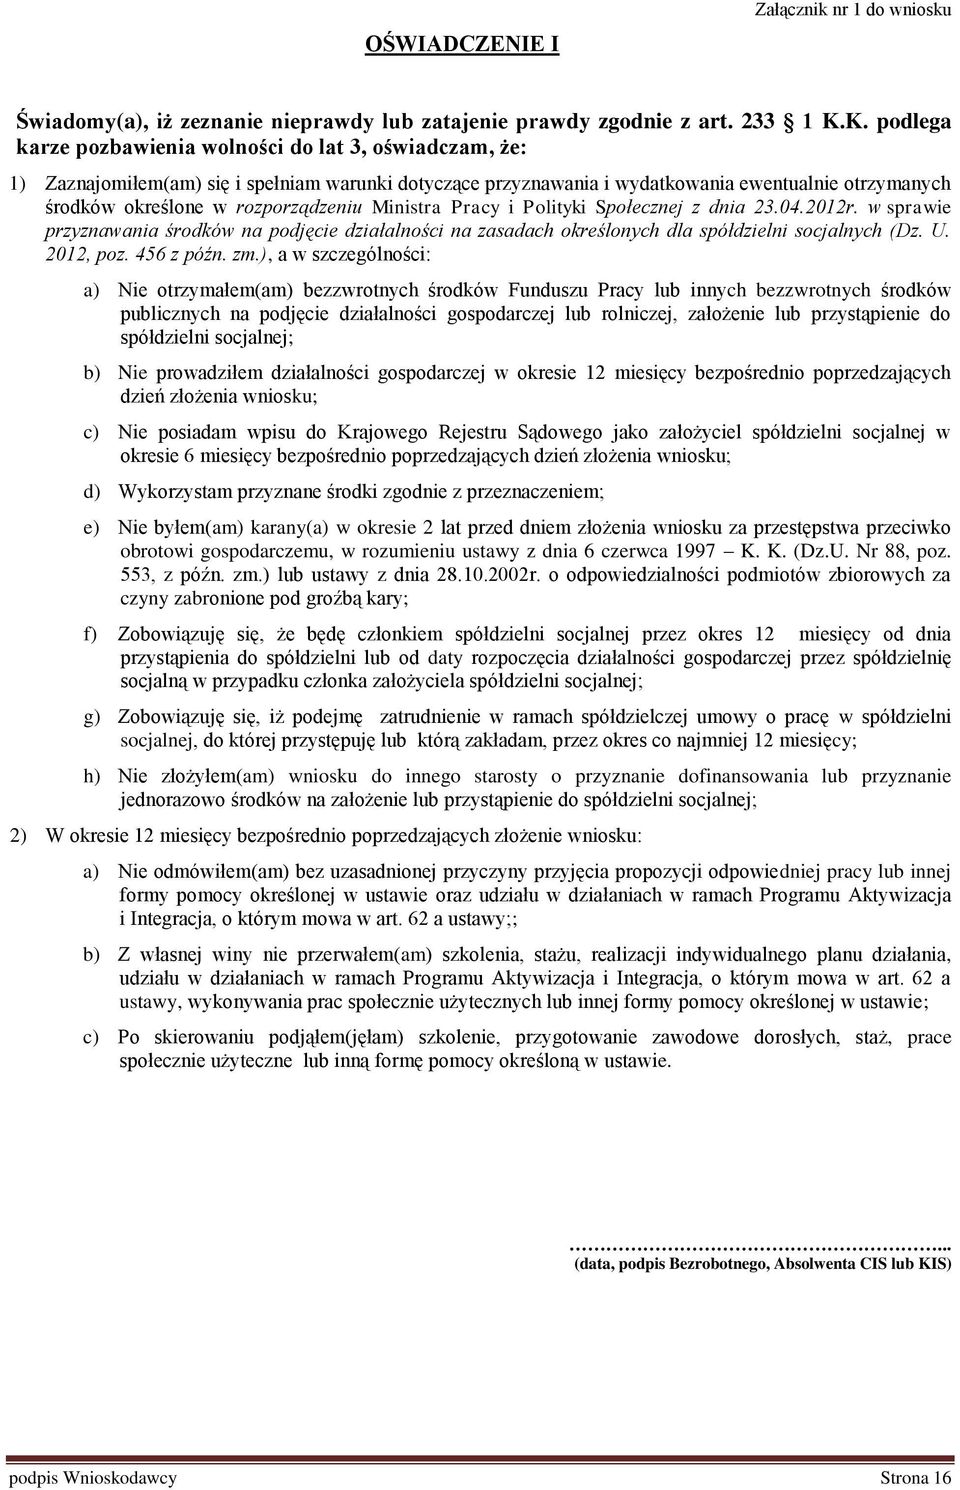 rozporządzeniu Ministra Pracy i Polityki Społecznej z dnia 23.04.2012r. w sprawie przyznawania środków na podjęcie działalności na zasadach określonych dla spółdzielni socjalnych (Dz. U. 2012, poz.